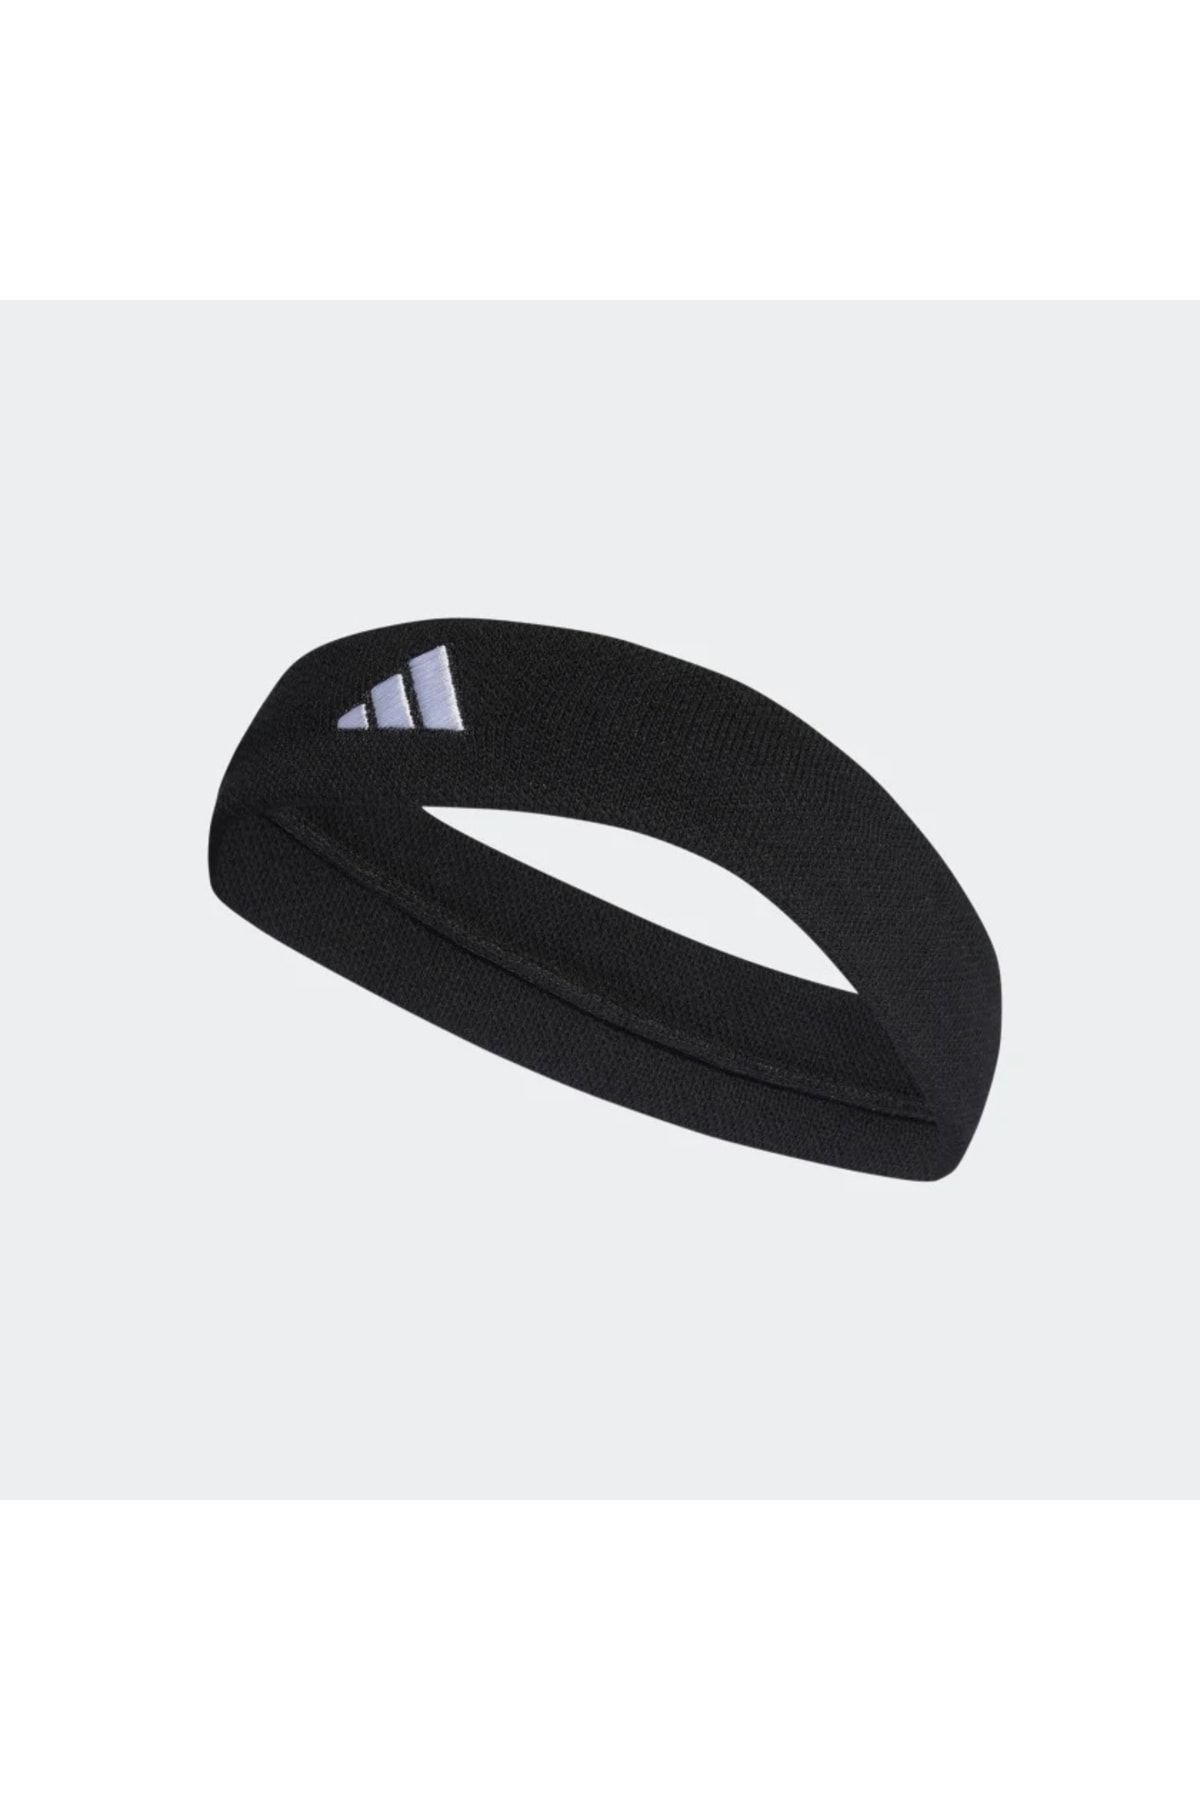 adidas Siyah - Beyaz Saç Bandı Ht3909 Tennıs Headband